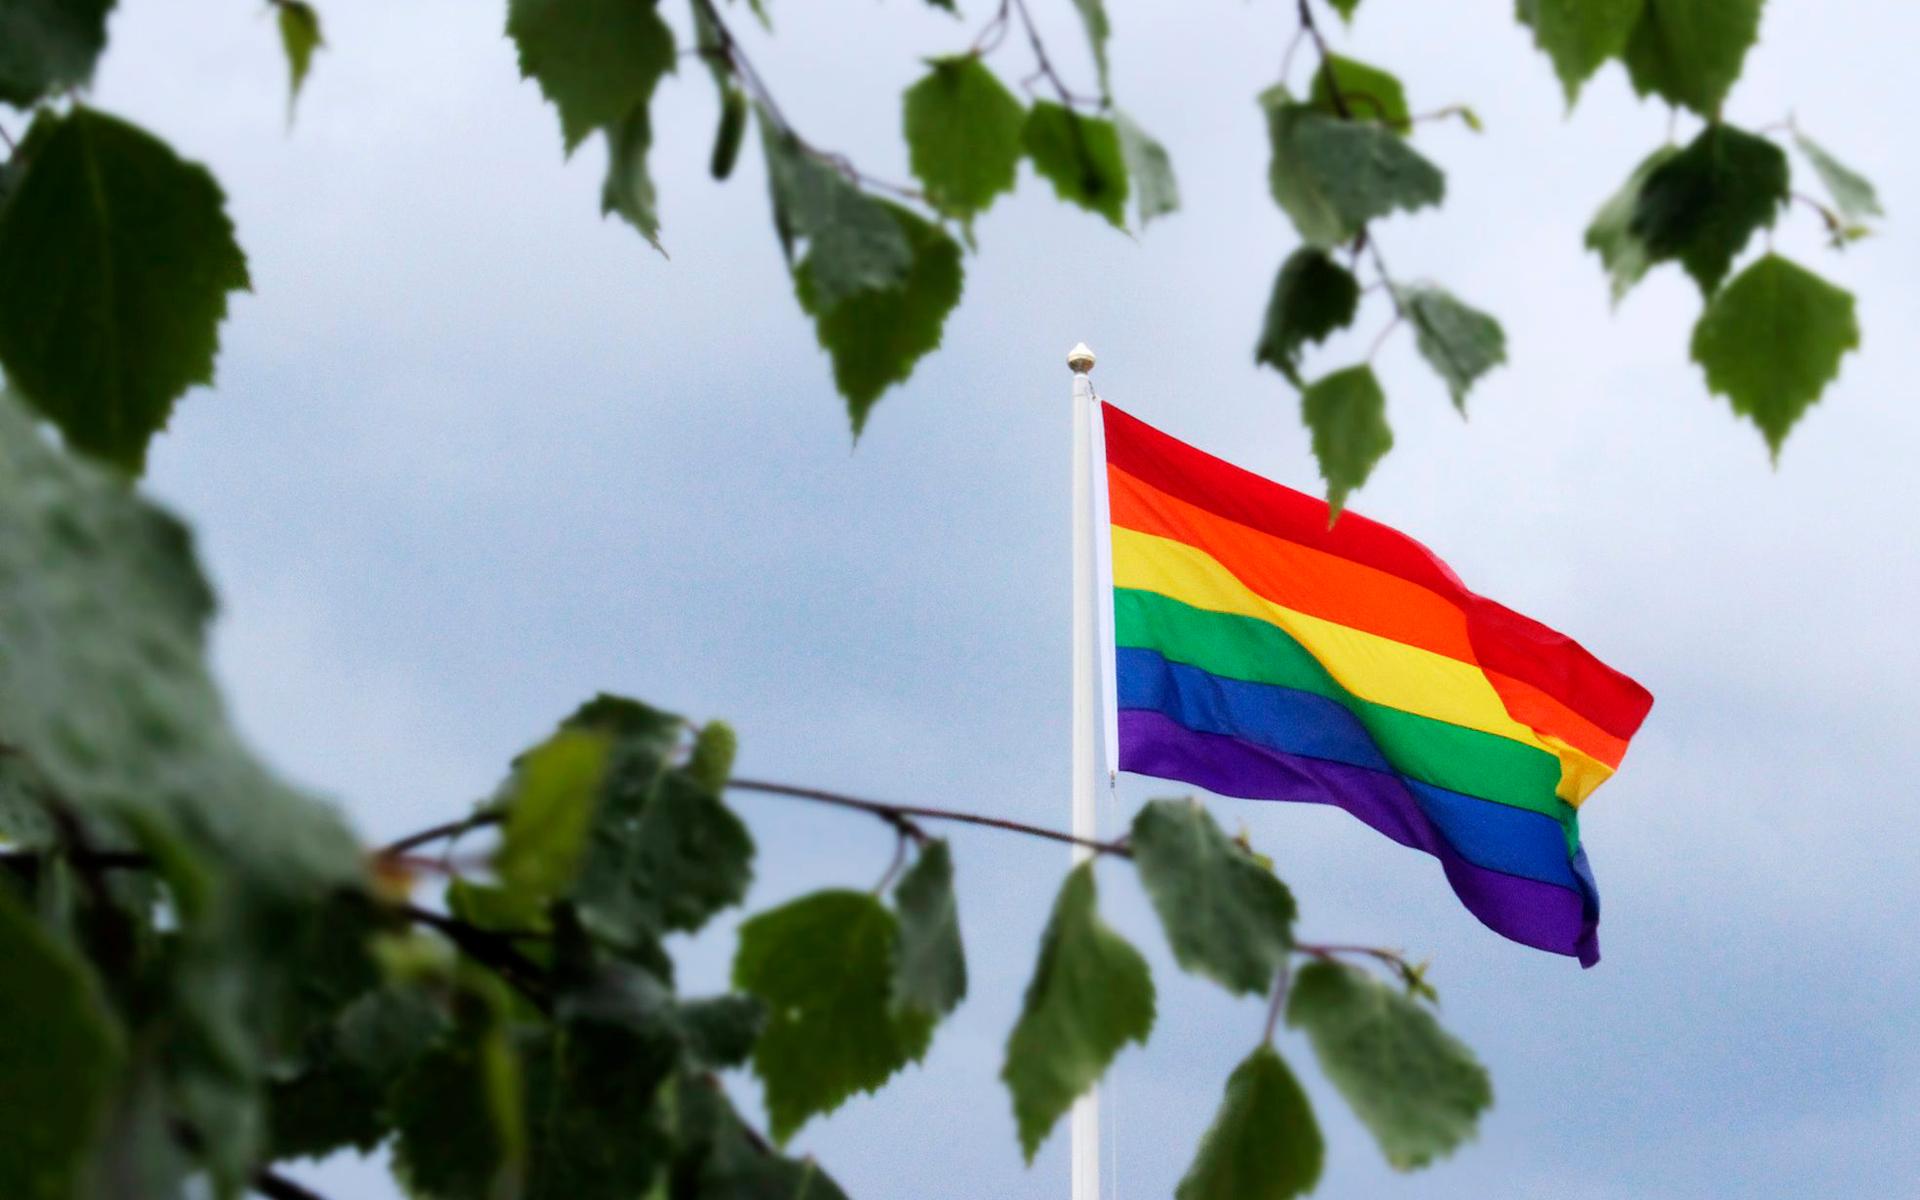 Regnbågsflaggan symboliserar mångfald och är känd över hela världen som en symbol för HBTQI-rörelsen.